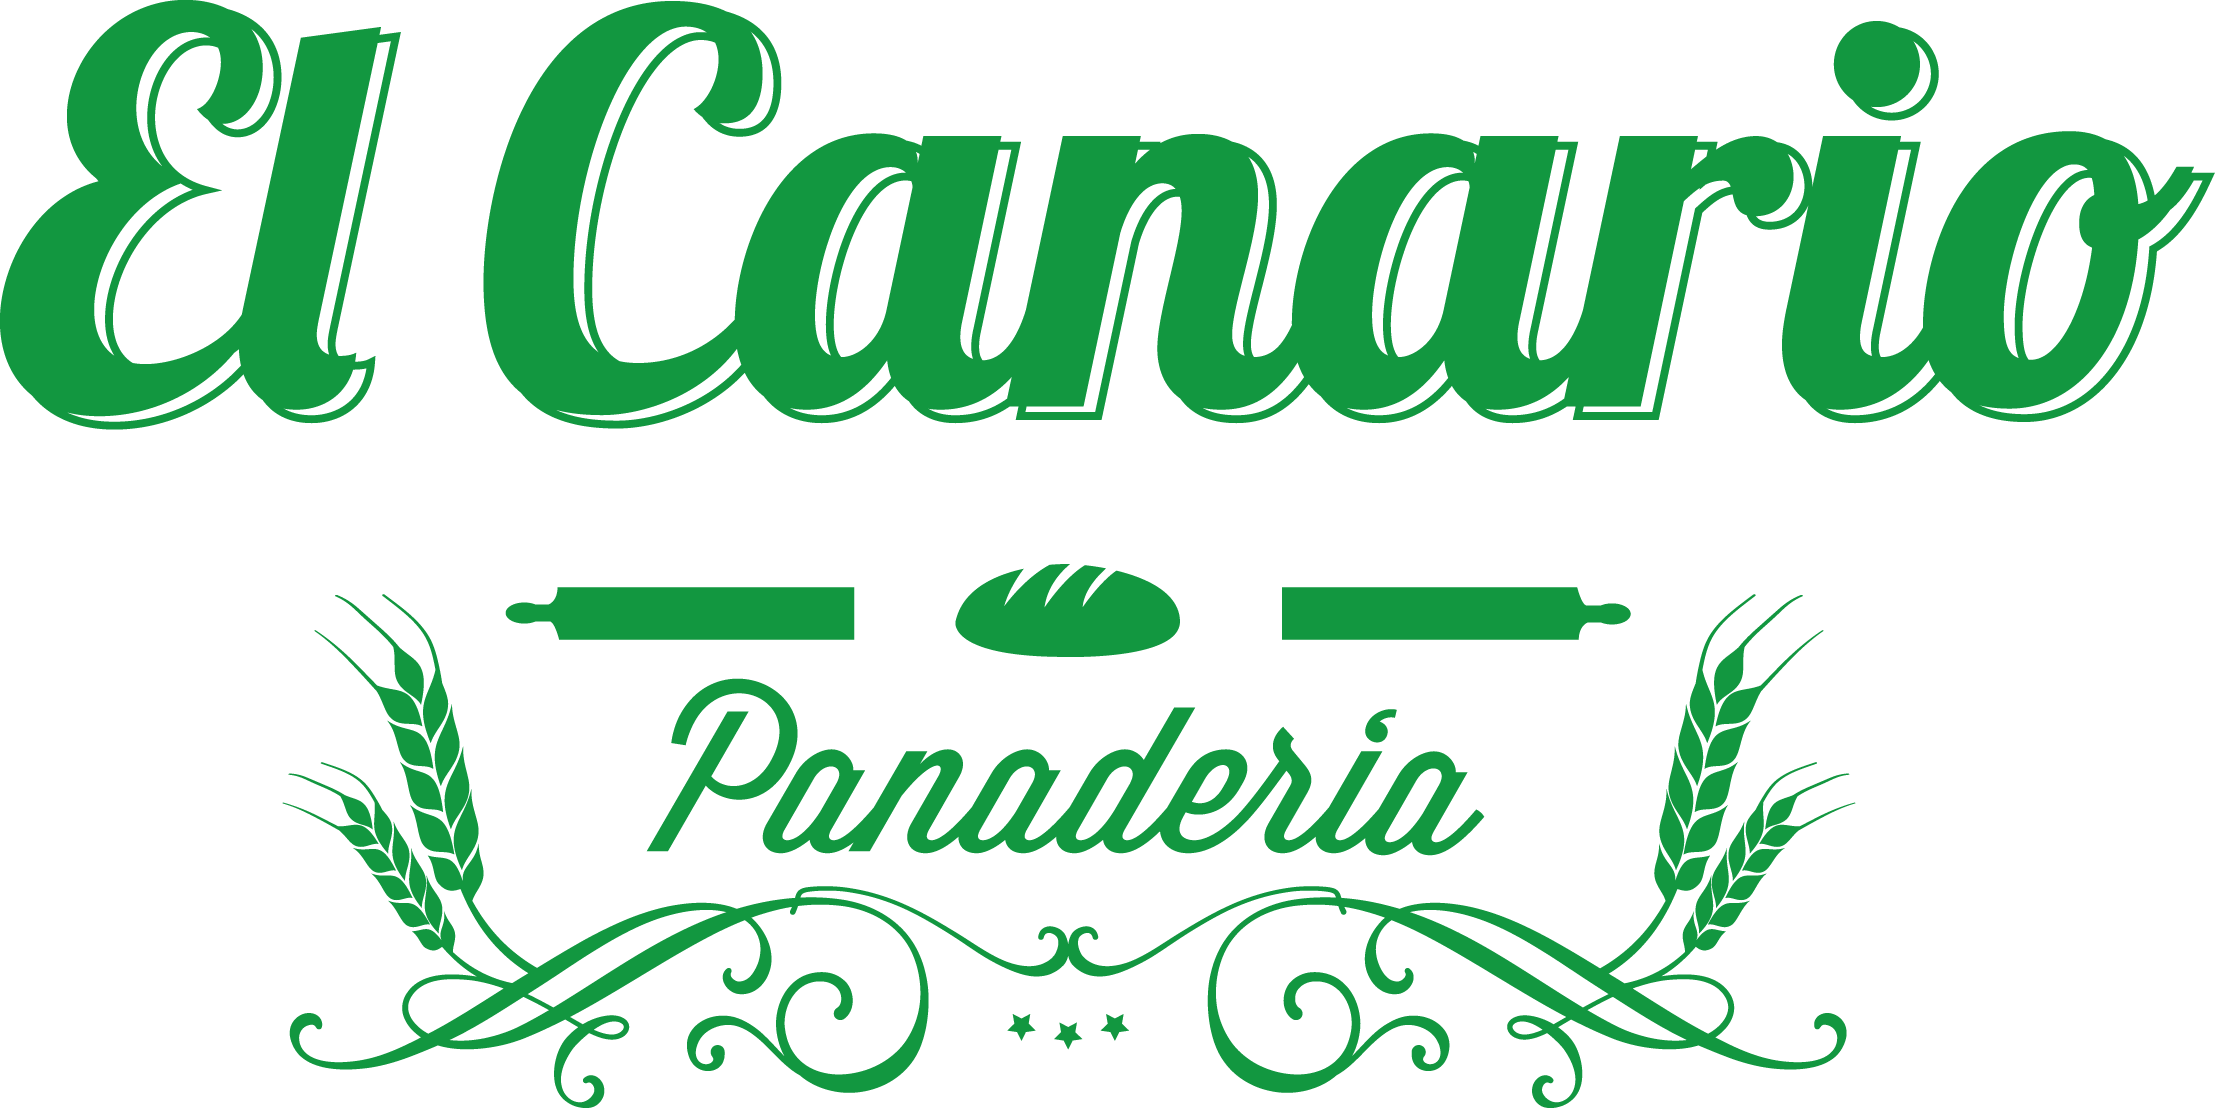 Panificadora El Canario